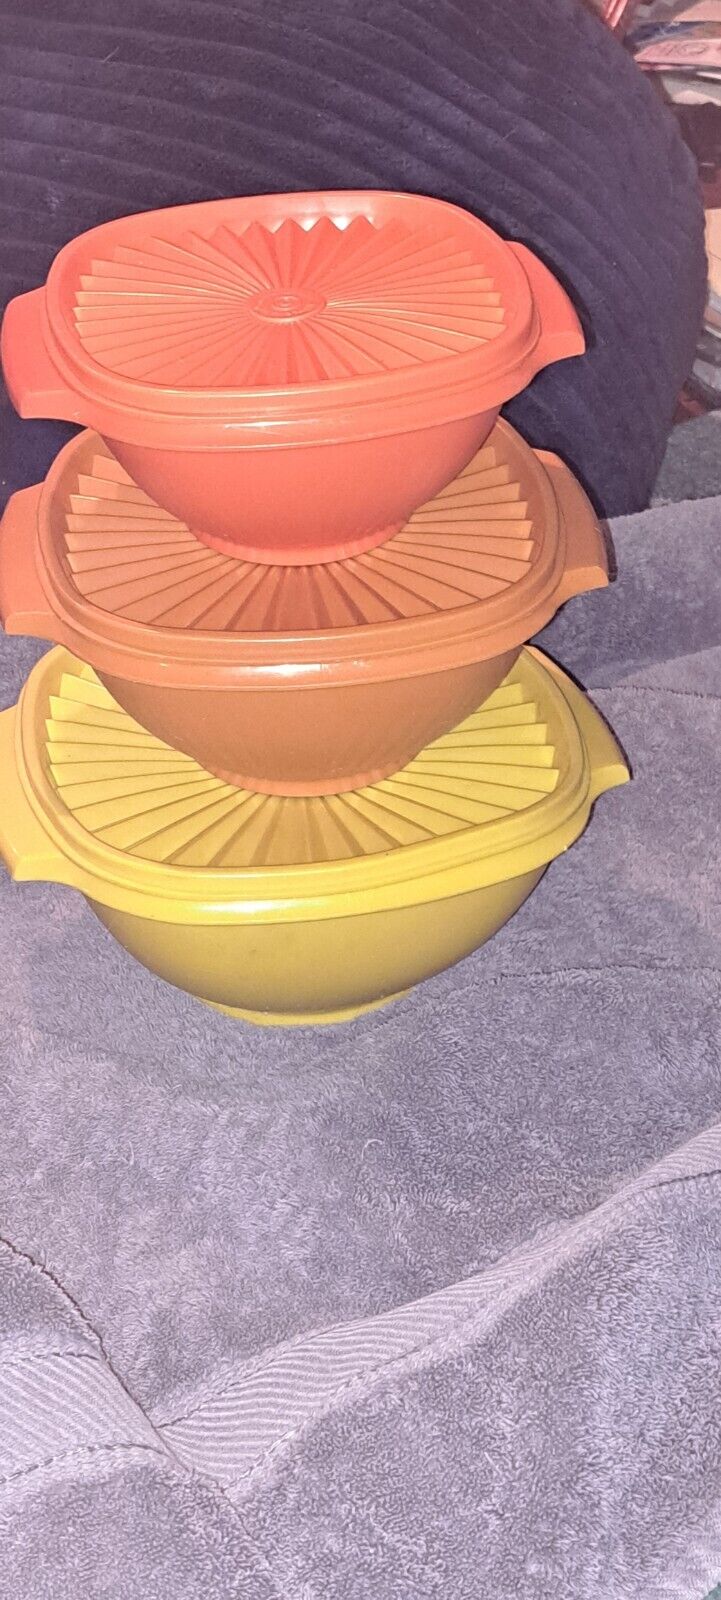 3 Piece Vintage Tupperware Servalier Bowls Euc